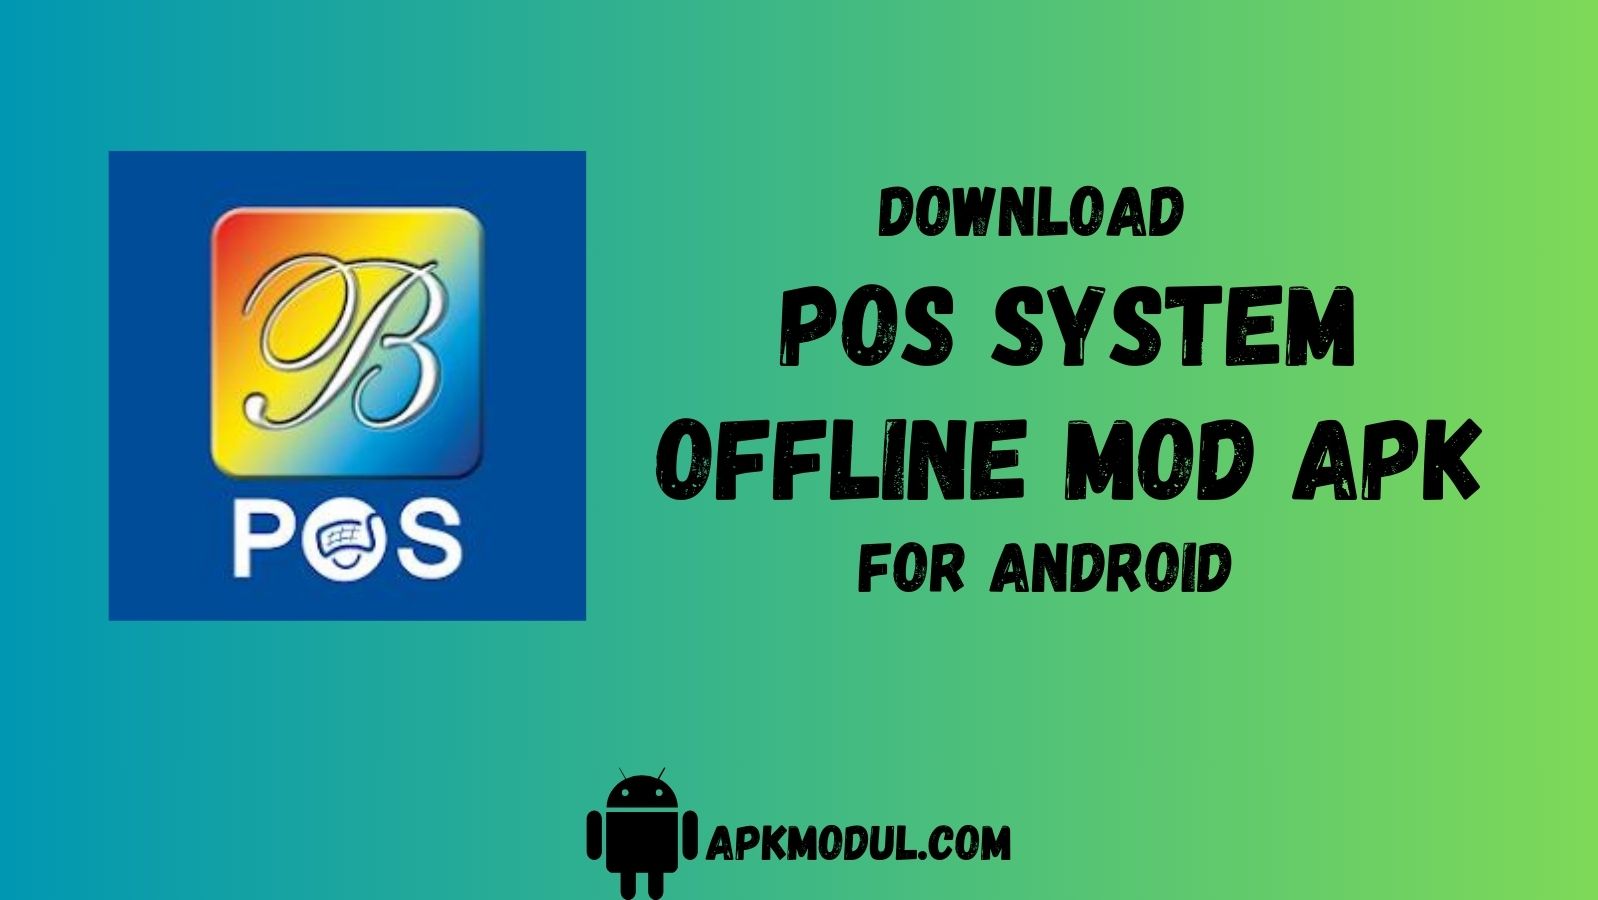 POS system offline mod apk